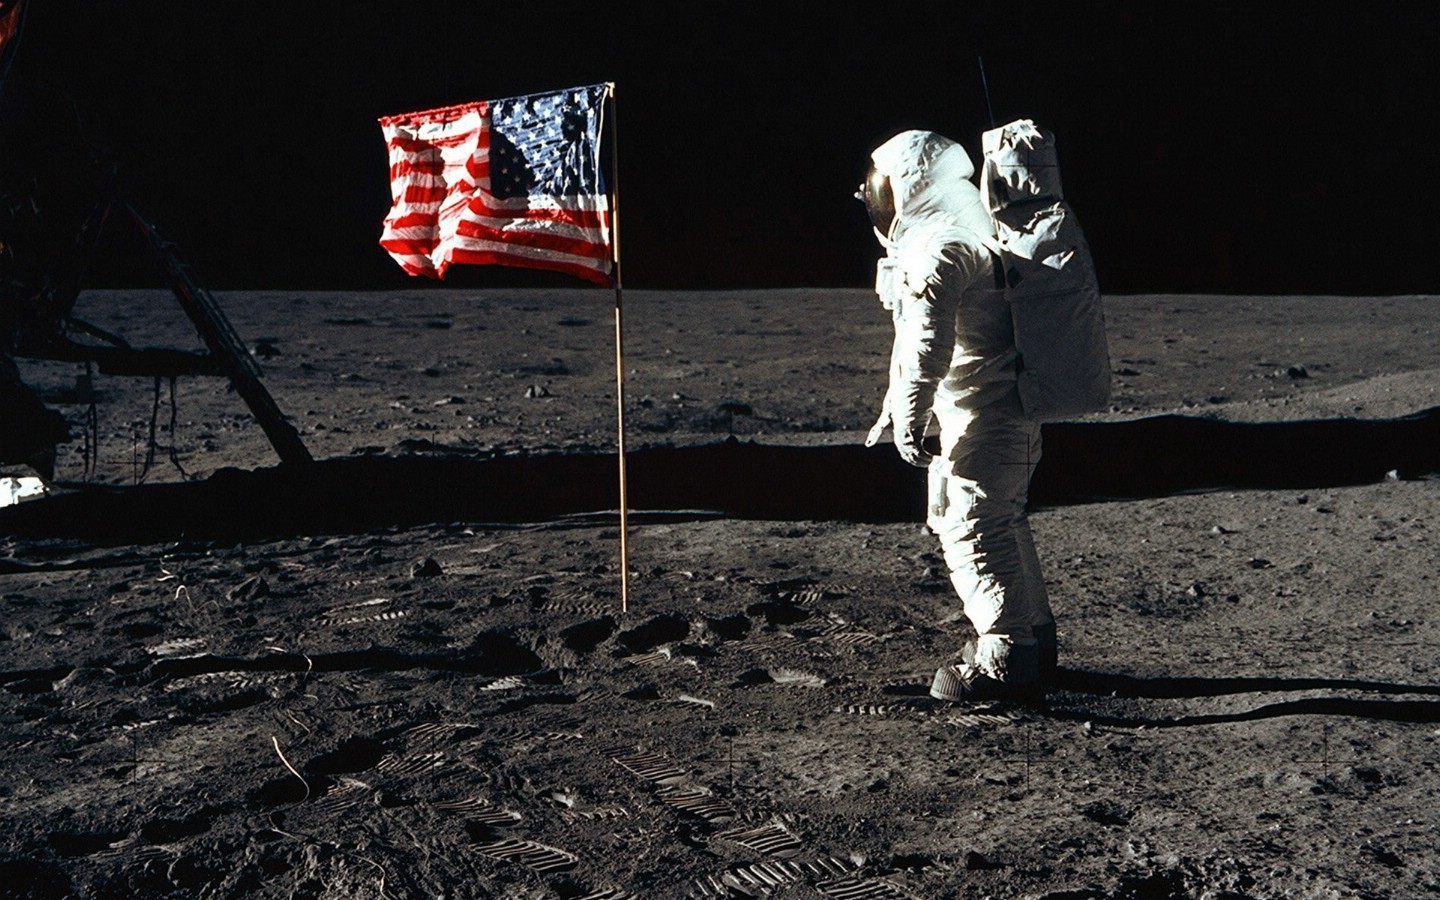 壁纸1440x900阿波罗11 Apollo 11 珍贵照片壁纸 壁纸19壁纸 阿波罗11 （Apo壁纸 阿波罗11 （Apo图片 阿波罗11 （Apo素材 风景壁纸 风景图库 风景图片素材桌面壁纸